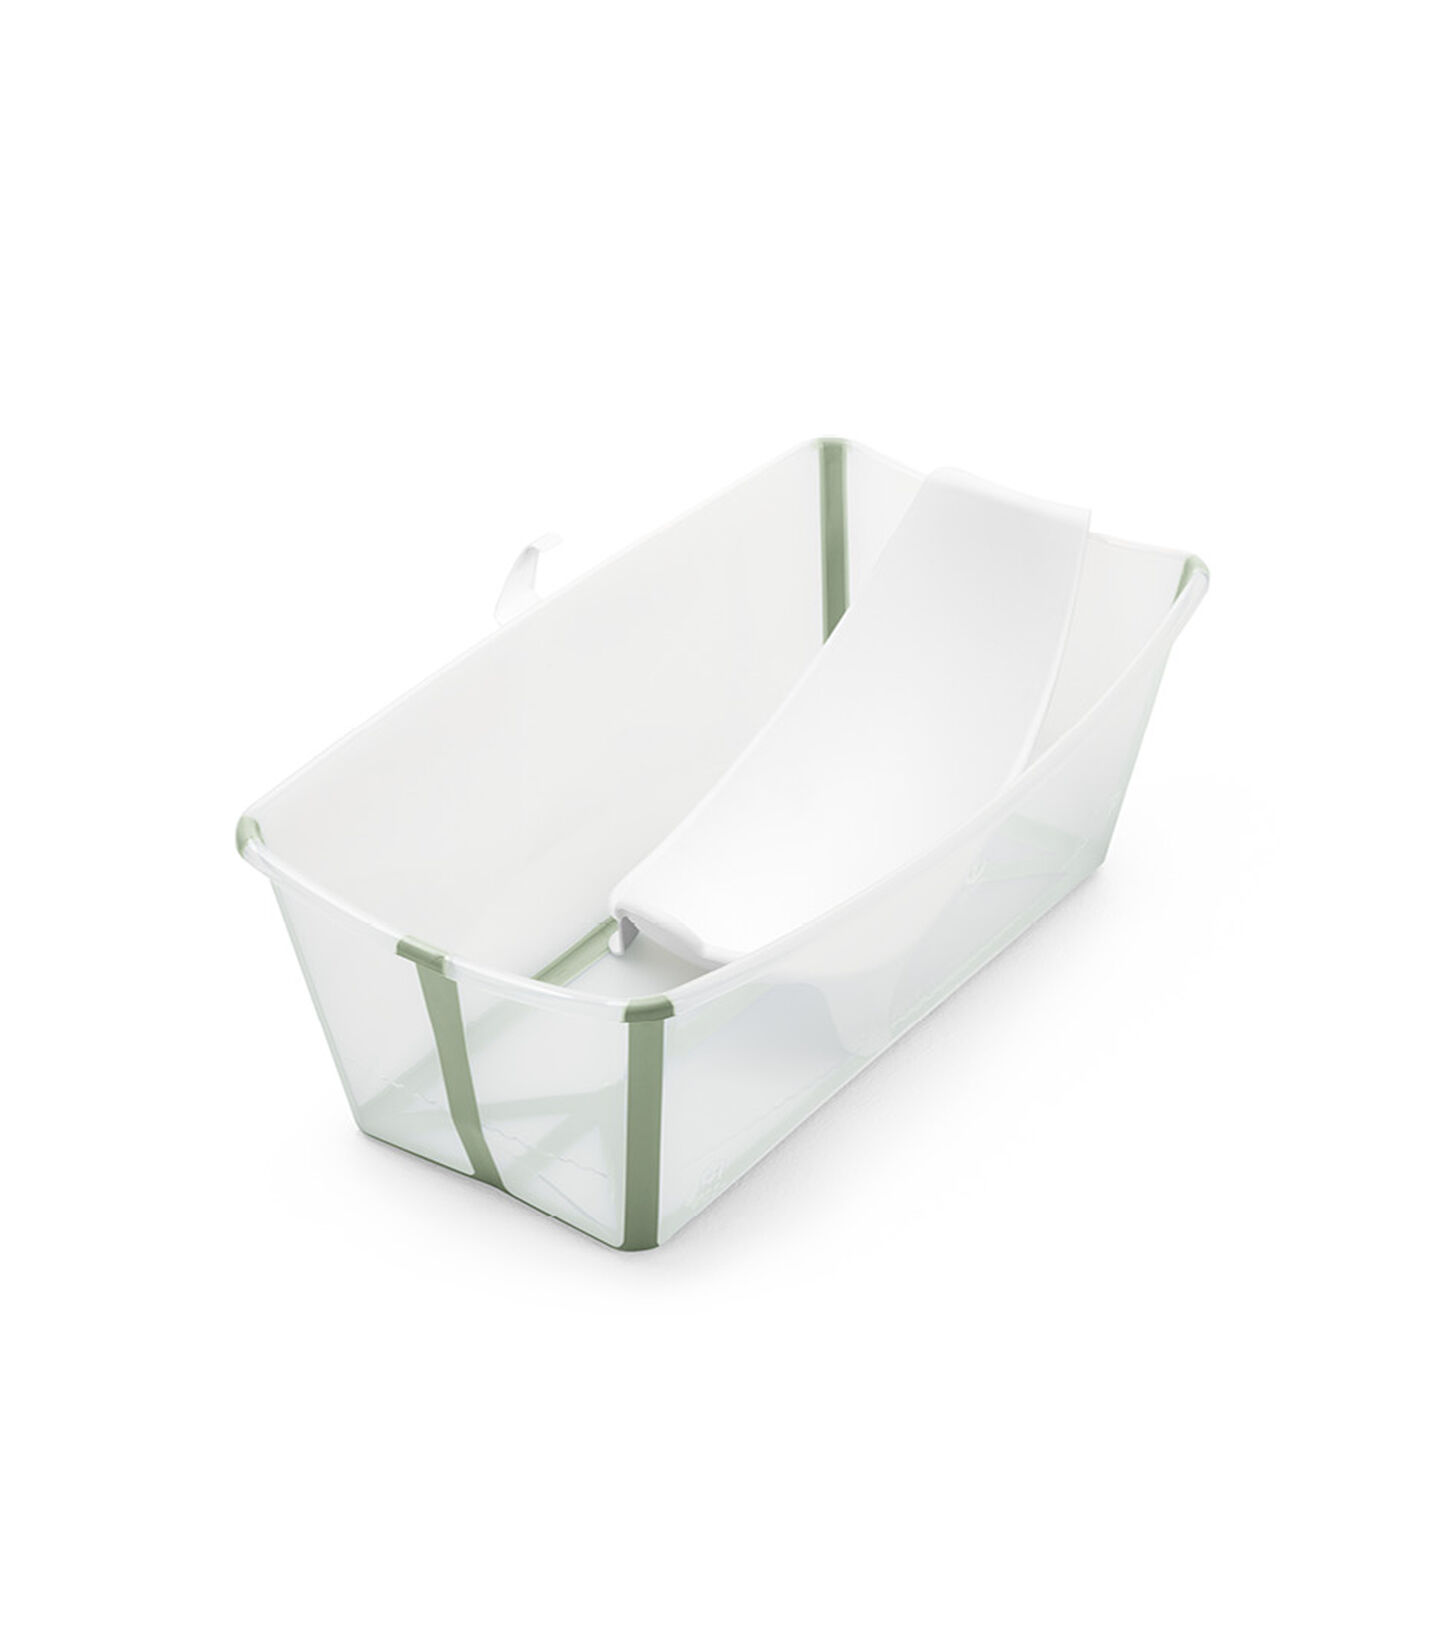 Pakiet Stokke® Flexi Bath® Transparentny Zielony, Transparentny Zielony, mainview view 1